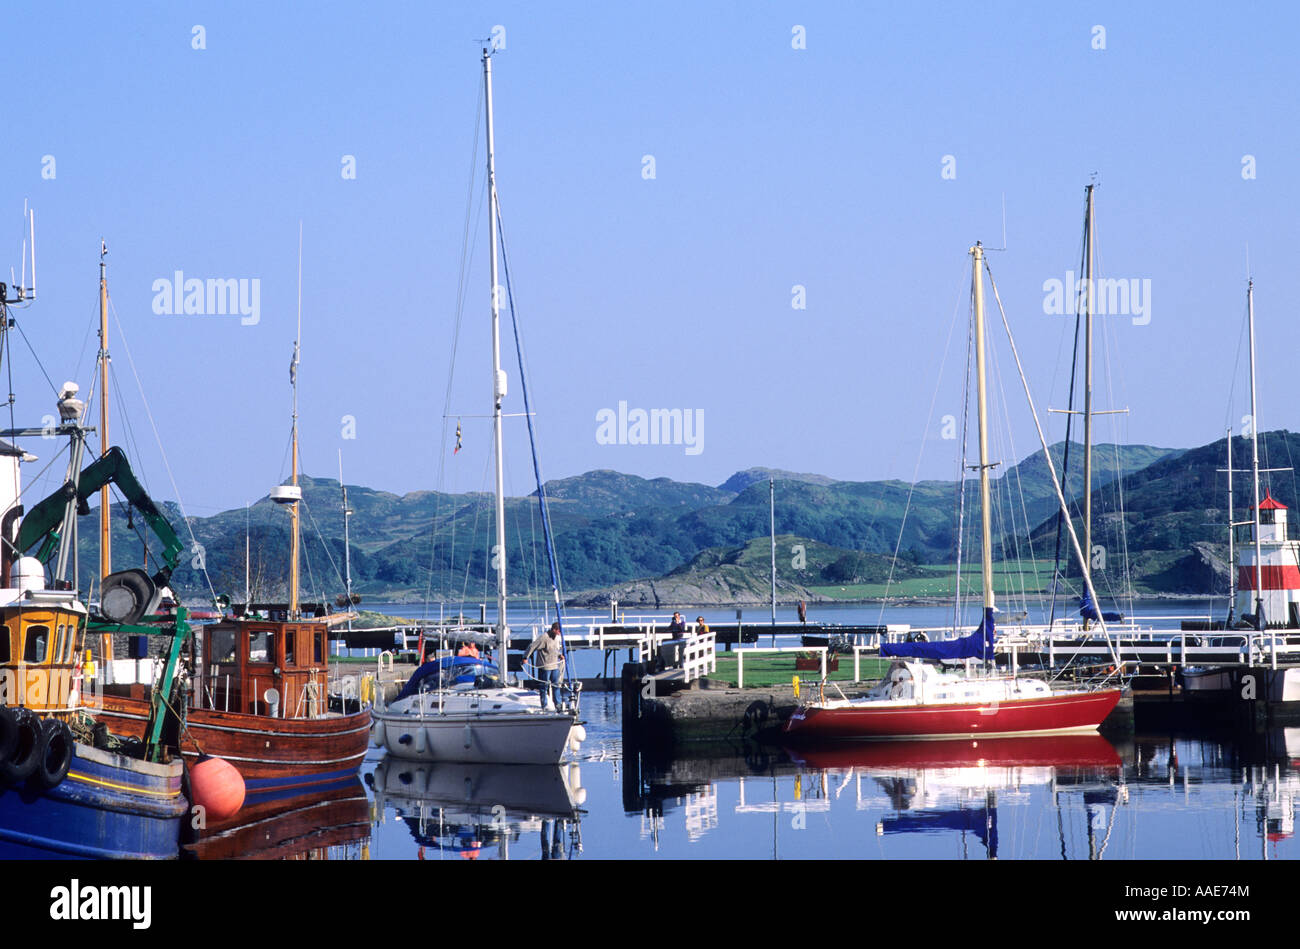 Crinan, première écluse sur Canal, port de plaisance, les bateaux, l'Argyllshire, à l'ouest, dans l'ouest de l'Écosse, Royaume-Uni, Voyage tourisme, transport, vacances à flot, Banque D'Images